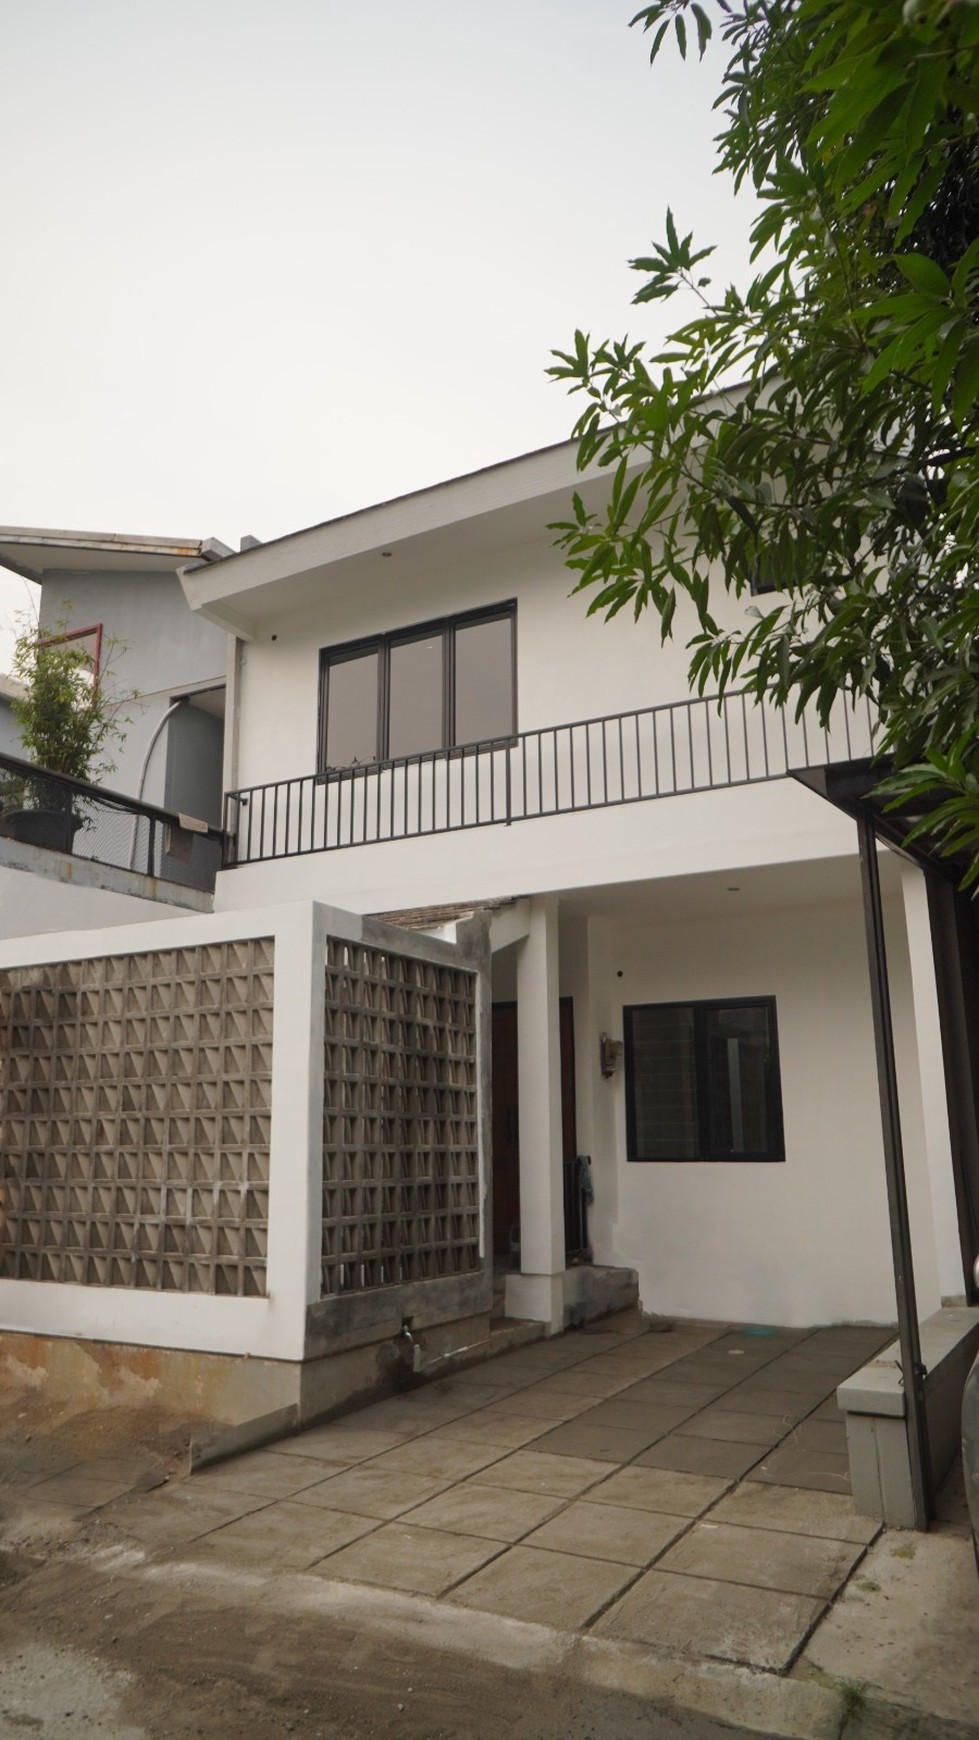 Rumah Minimalis renovasi Bagus .,Siap huni, Akses mudah di Bintaro Sektor 9